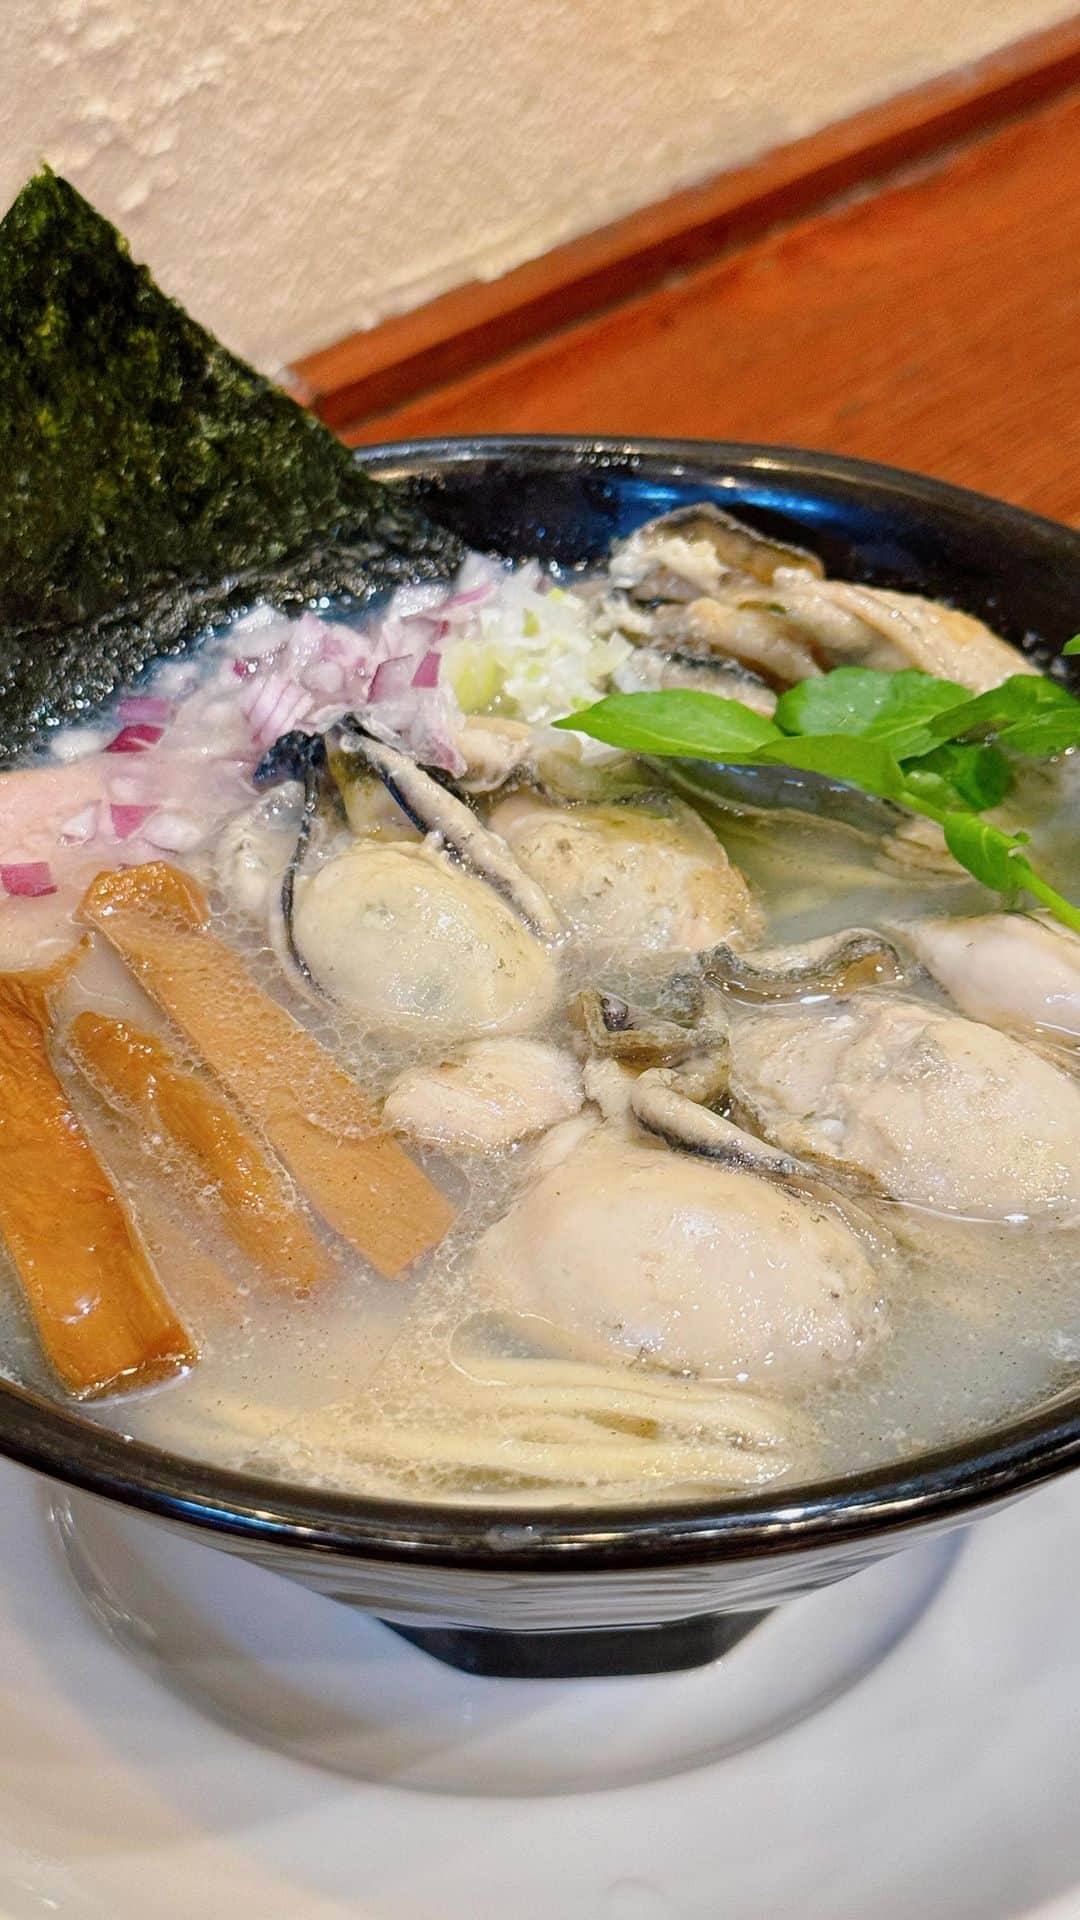 フォーリンデブのインスタグラム：「牡蠣ラーメンの最高峰！  横浜駅から徒歩15分ほどの横浜中央卸売市場（東京で言う豊洲市場）にある、「らーめん おおはし」で、めちゃめちゃ美味しい牡蠣ラーメンを発見🌟  ぷりっぷりでジューシーな牡蠣がたっぷり入った一杯は、今まで食べてきた牡蠣ラーメンの中ではトップクラスだったので、「カキ塩らーめん（1200円）＋カキ増し（500円）」で岩手県・陸前高田産の牡蠣を増量してみたのも正解😎✨  しかも、旨味が溶けこんだクリアな塩スープと、しなやかな自家製の平打ち中太麺もマッチしてて、濃い醤油味のザクザクなメンマは味変にもなり、トータルの一体感も素晴らしかった❗️  横浜の市場は、お寿司の「さがみや」が一強かと思っていたけど、ここも通っちゃうね🙌（ハシゴすれば良いか笑）  --------- 🍴らーめん おおはし（Ramen Ohashi） ☎️050-5570-8015 📍神奈川県横浜市神奈川区山内町1-1 横浜中央卸売市場本場内関連棟 🚃横浜駅から徒歩15分 💰食べログ予算 昼-¥999 ⏰7:30-13:30（日曜定休） @ramen_ohashi  - #神奈川グルメ #横浜グルメ #横浜駅グルメ #横浜中央卸売市場 #らーめんおおはし #牡蠣ラーメン #牡蠣が美味しすぎ #軽く湯引きしてあって #ひとつだけオイル漬けも入ってる  #japanfood #japantravel #yokohamafood #yokohamatravel #myyokohama #foodtrip  - ▼ エリア&ジャンル検索 #フォーリンデブ神奈川 #フォーリンデブ横浜 #フォーリンデブラーメン」